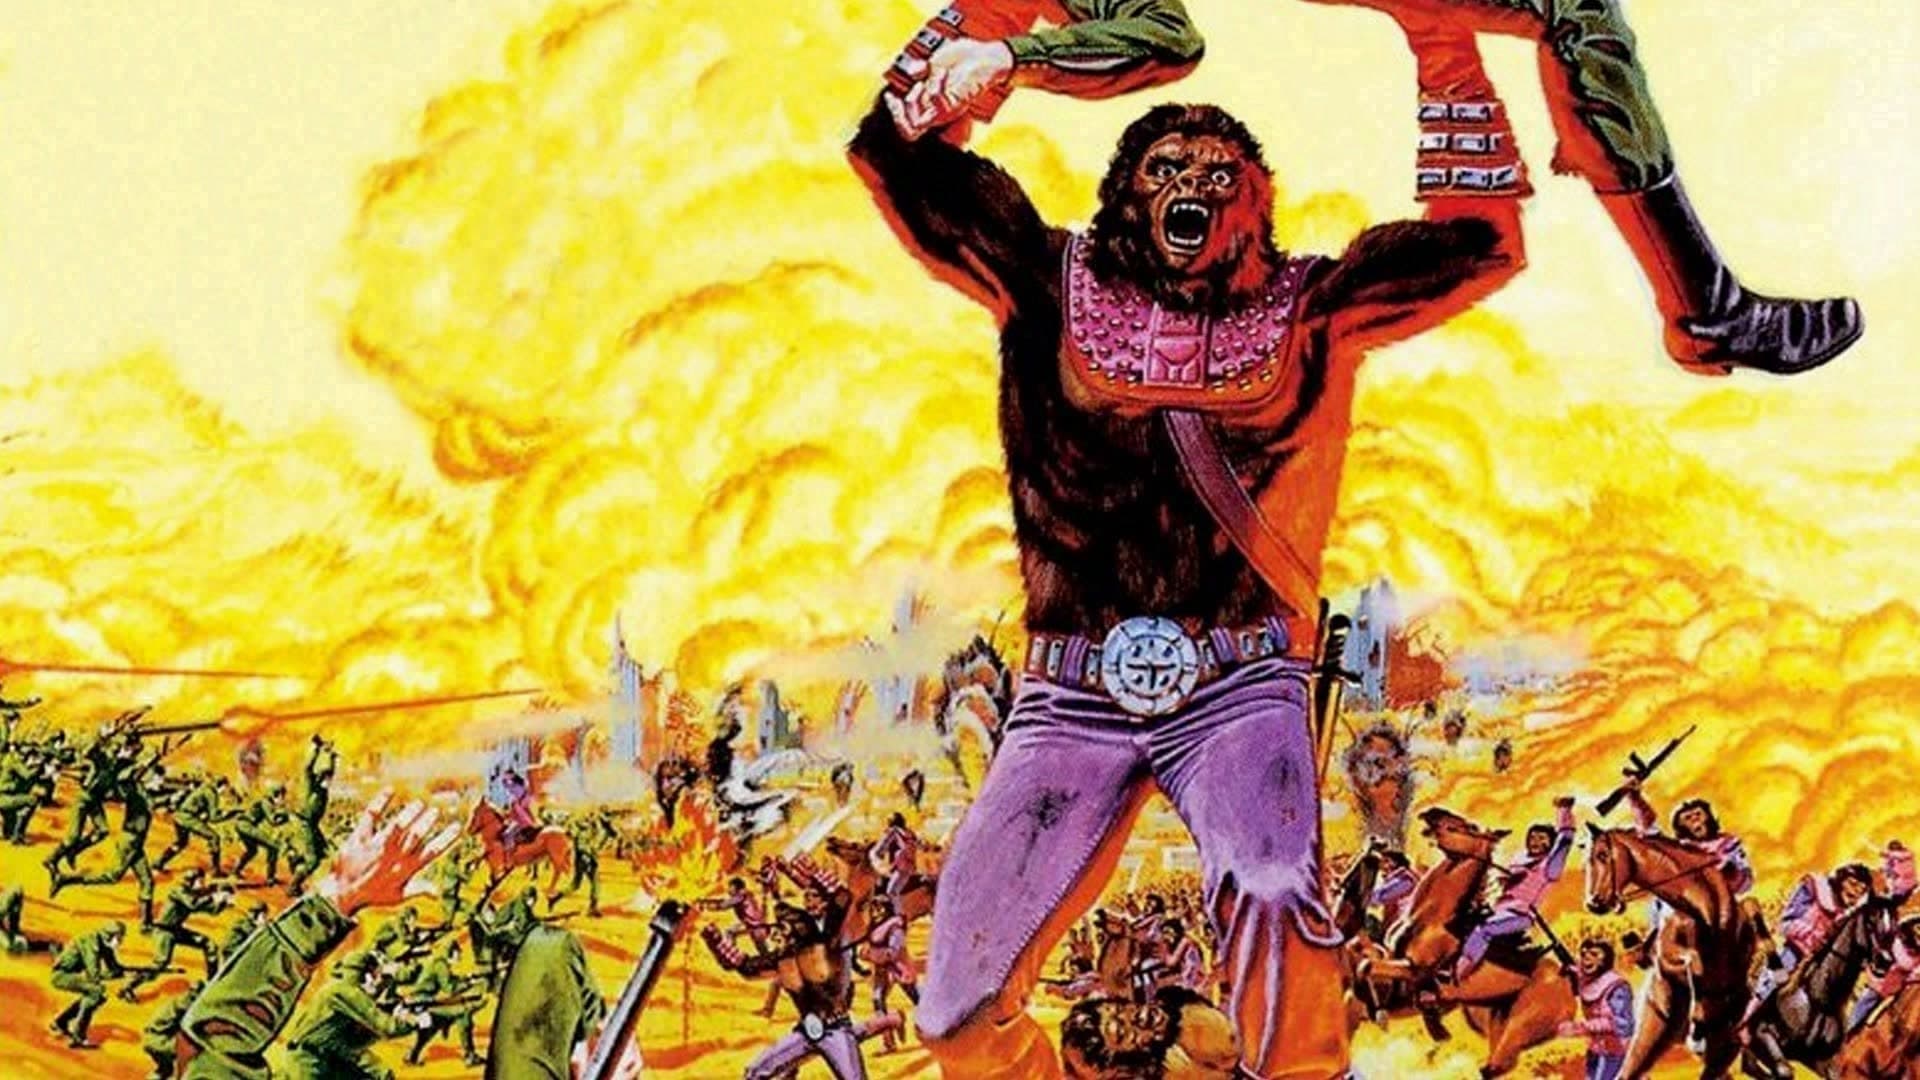 Batalha pelo Planeta dos Macacos (1973)